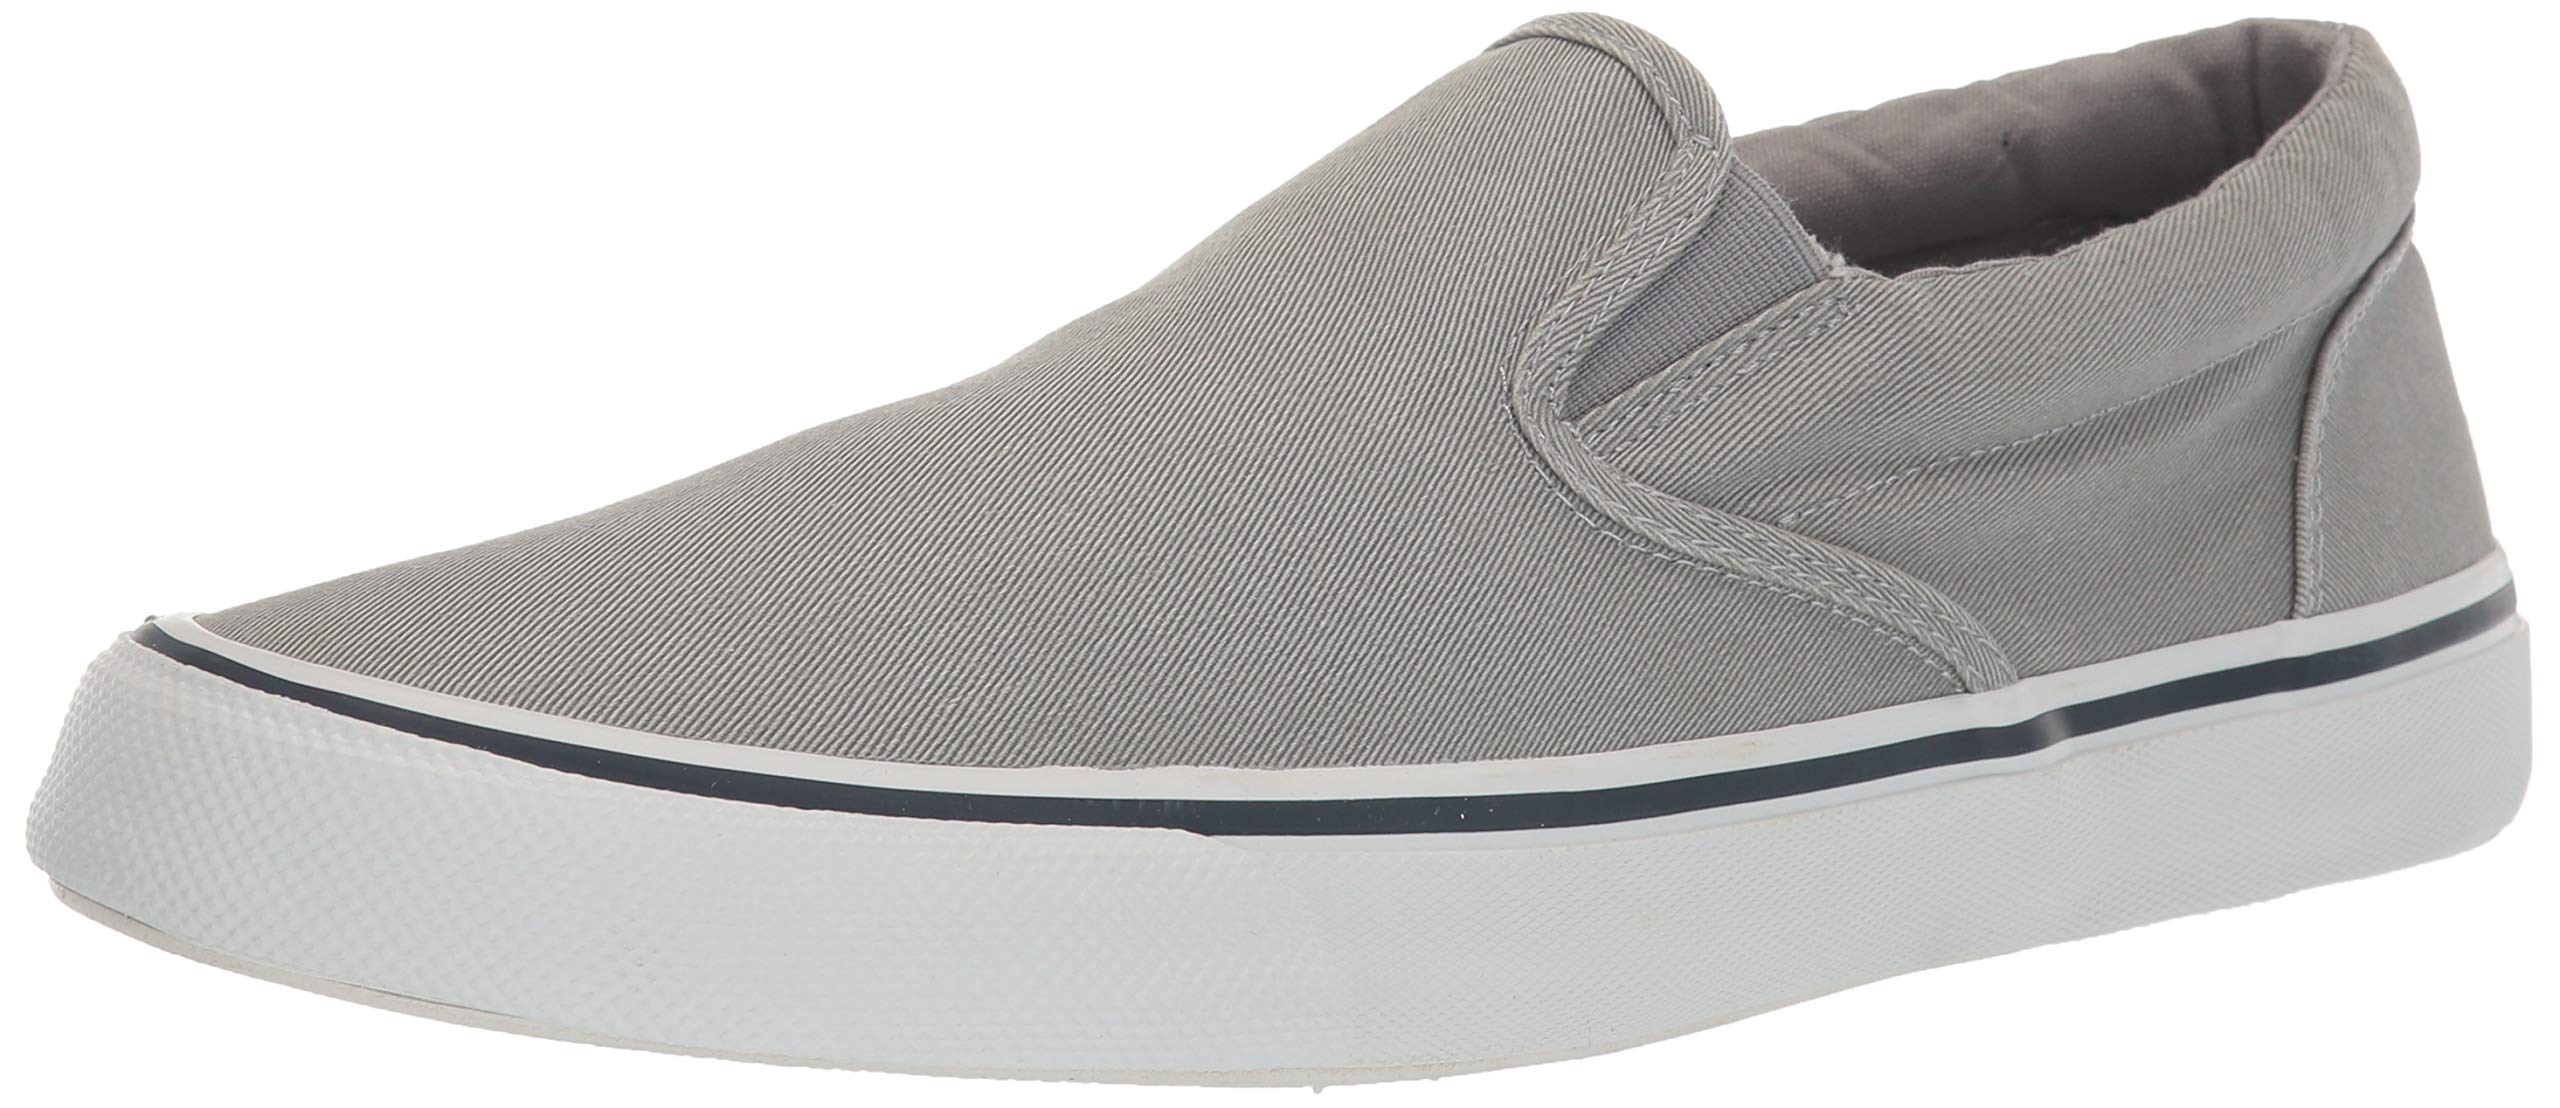 Sperry Mens Striper II Slip On Sneaker - SW Grey - Size 8.5